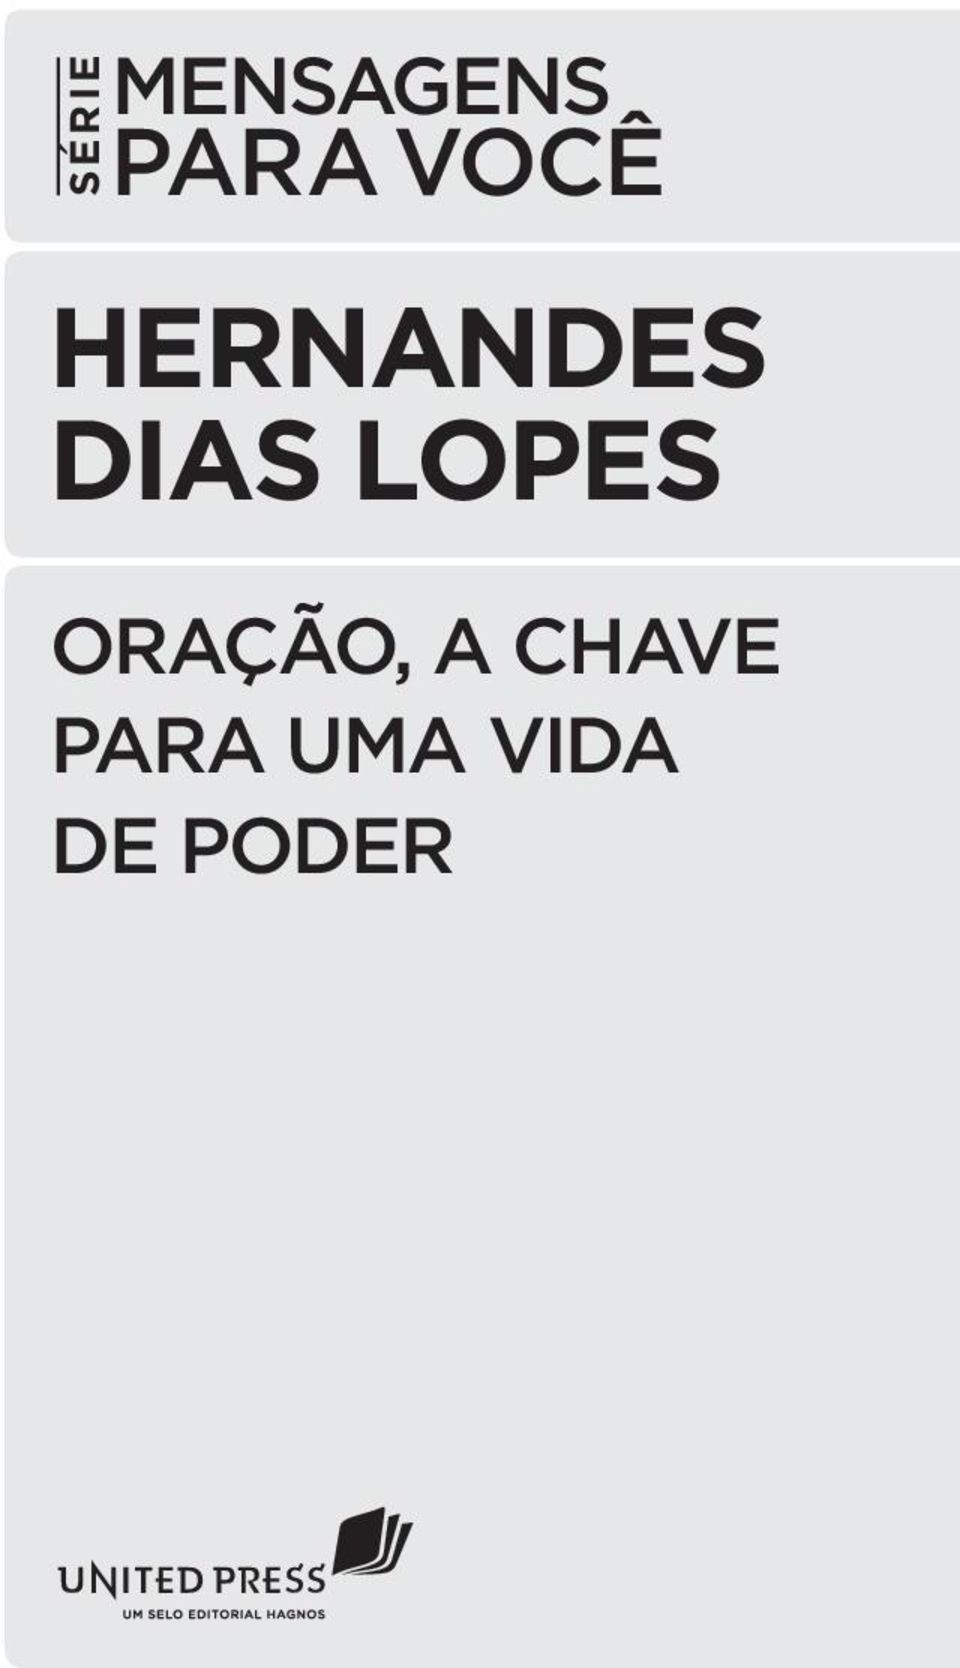 LOPES ORAÇÃO, A CHAVE